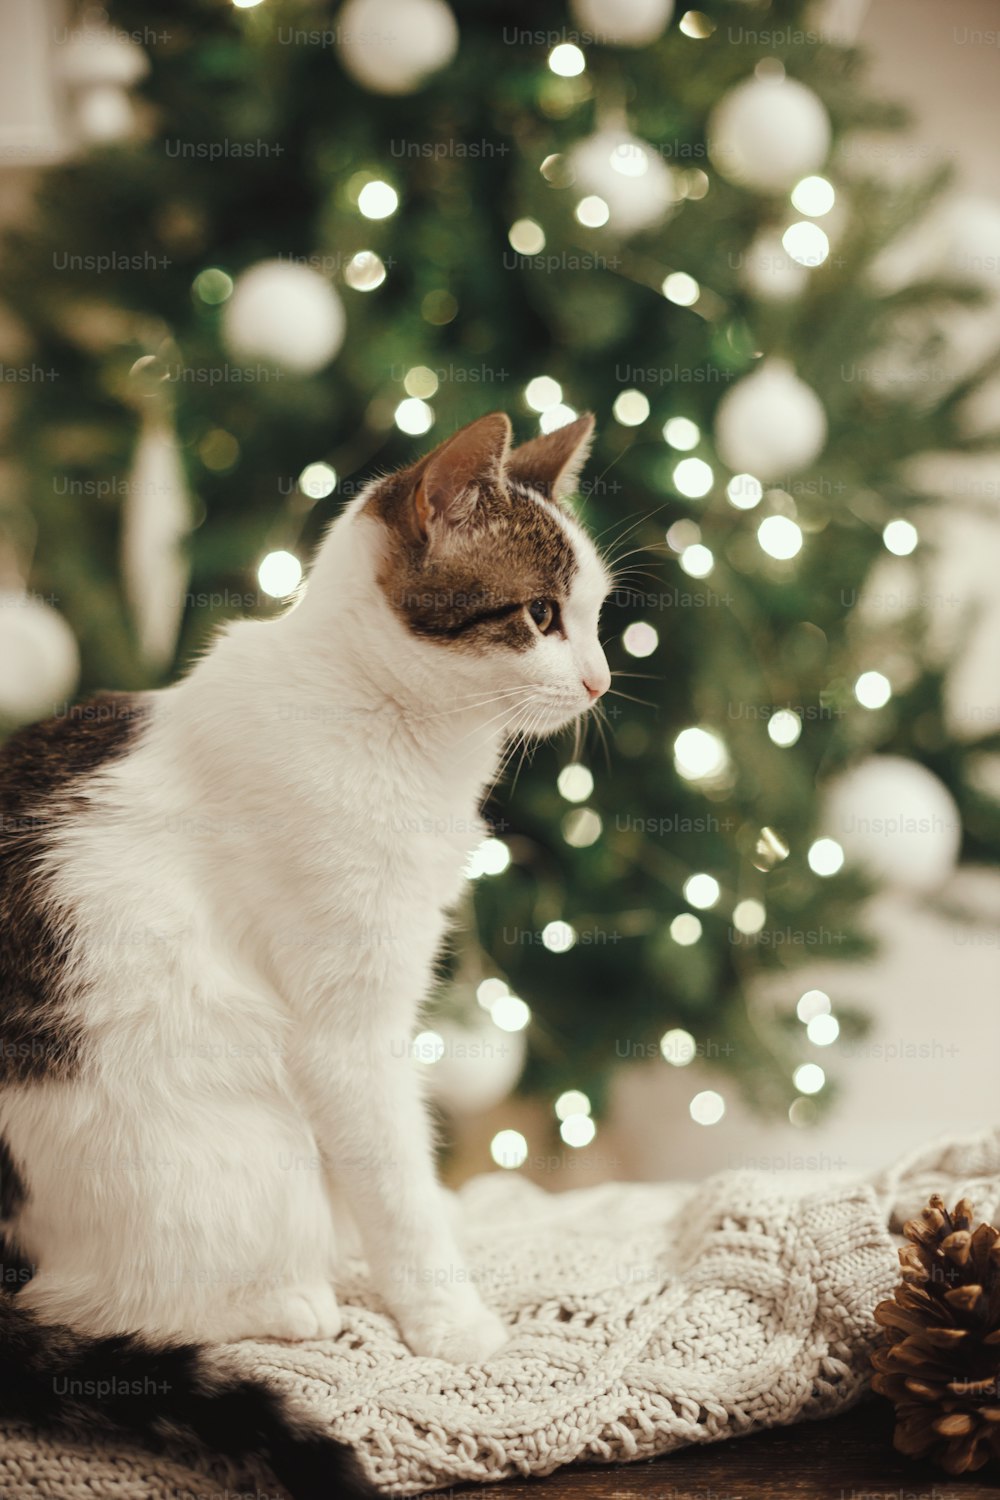 Adorabile gatto seduto su un accogliente maglione lavorato a maglia con pigna sullo sfondo delle luci dell'albero di Natale. Gattino carino con sguardo curioso in una stanza scandinava decorata a festa. Animali domestici e vacanze invernali